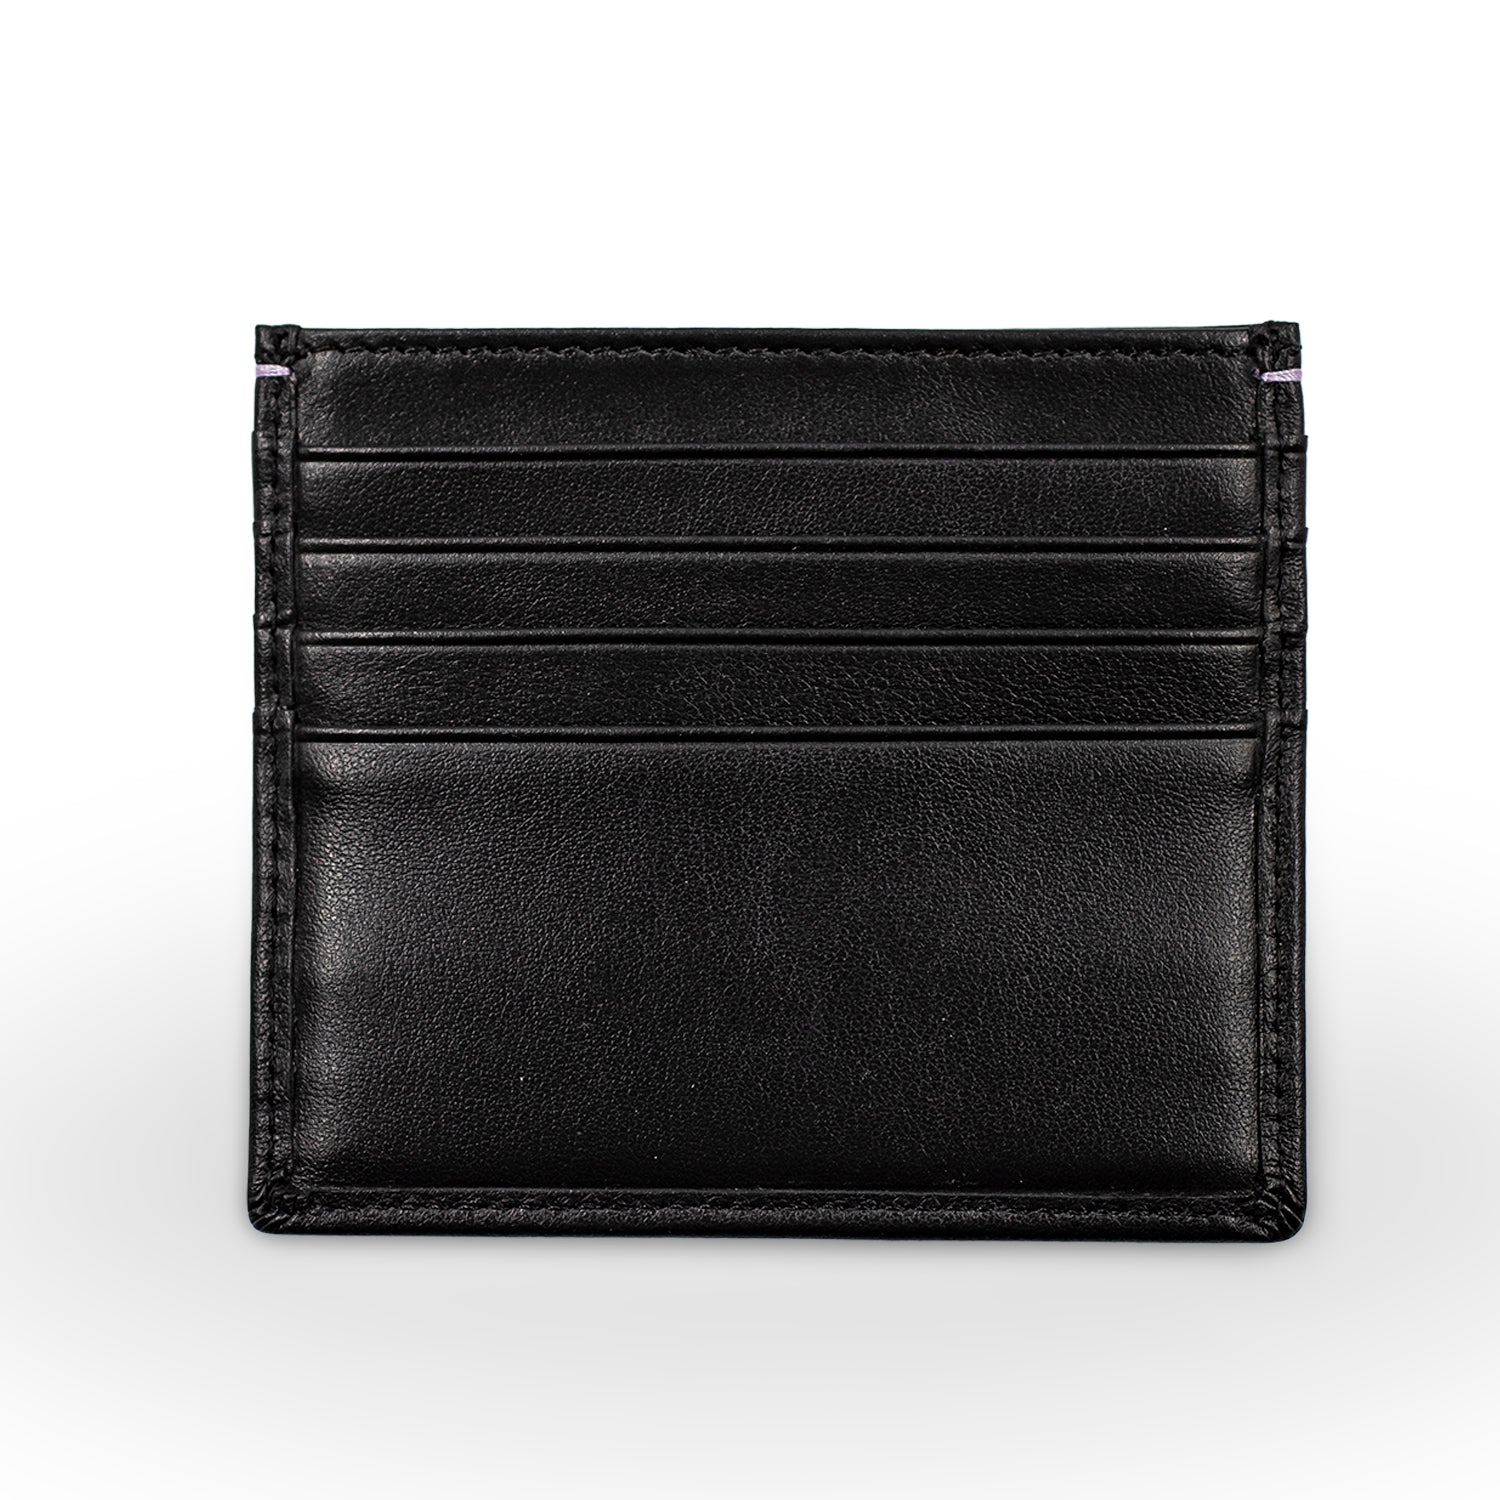 Antler Leather Card Holder Wallet 4 Slots